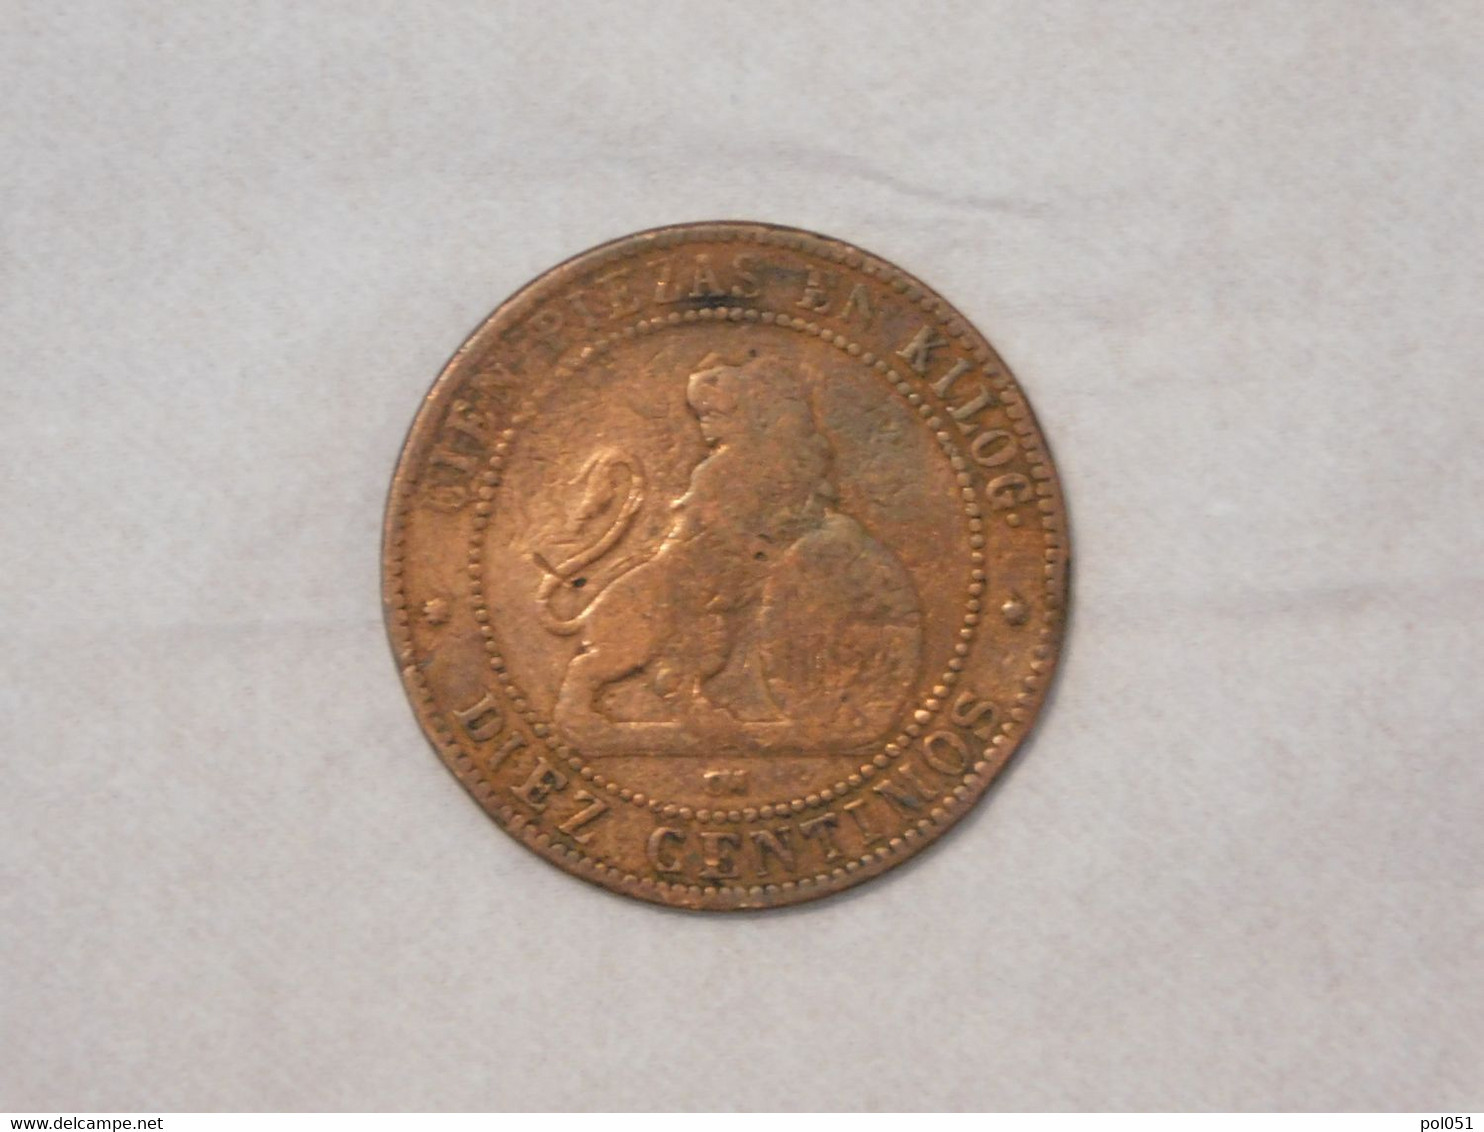 ESPAGNE SPAIN 10 DIEZ CENTIMOS CENT DE REAL 1870 - Monedas Provinciales